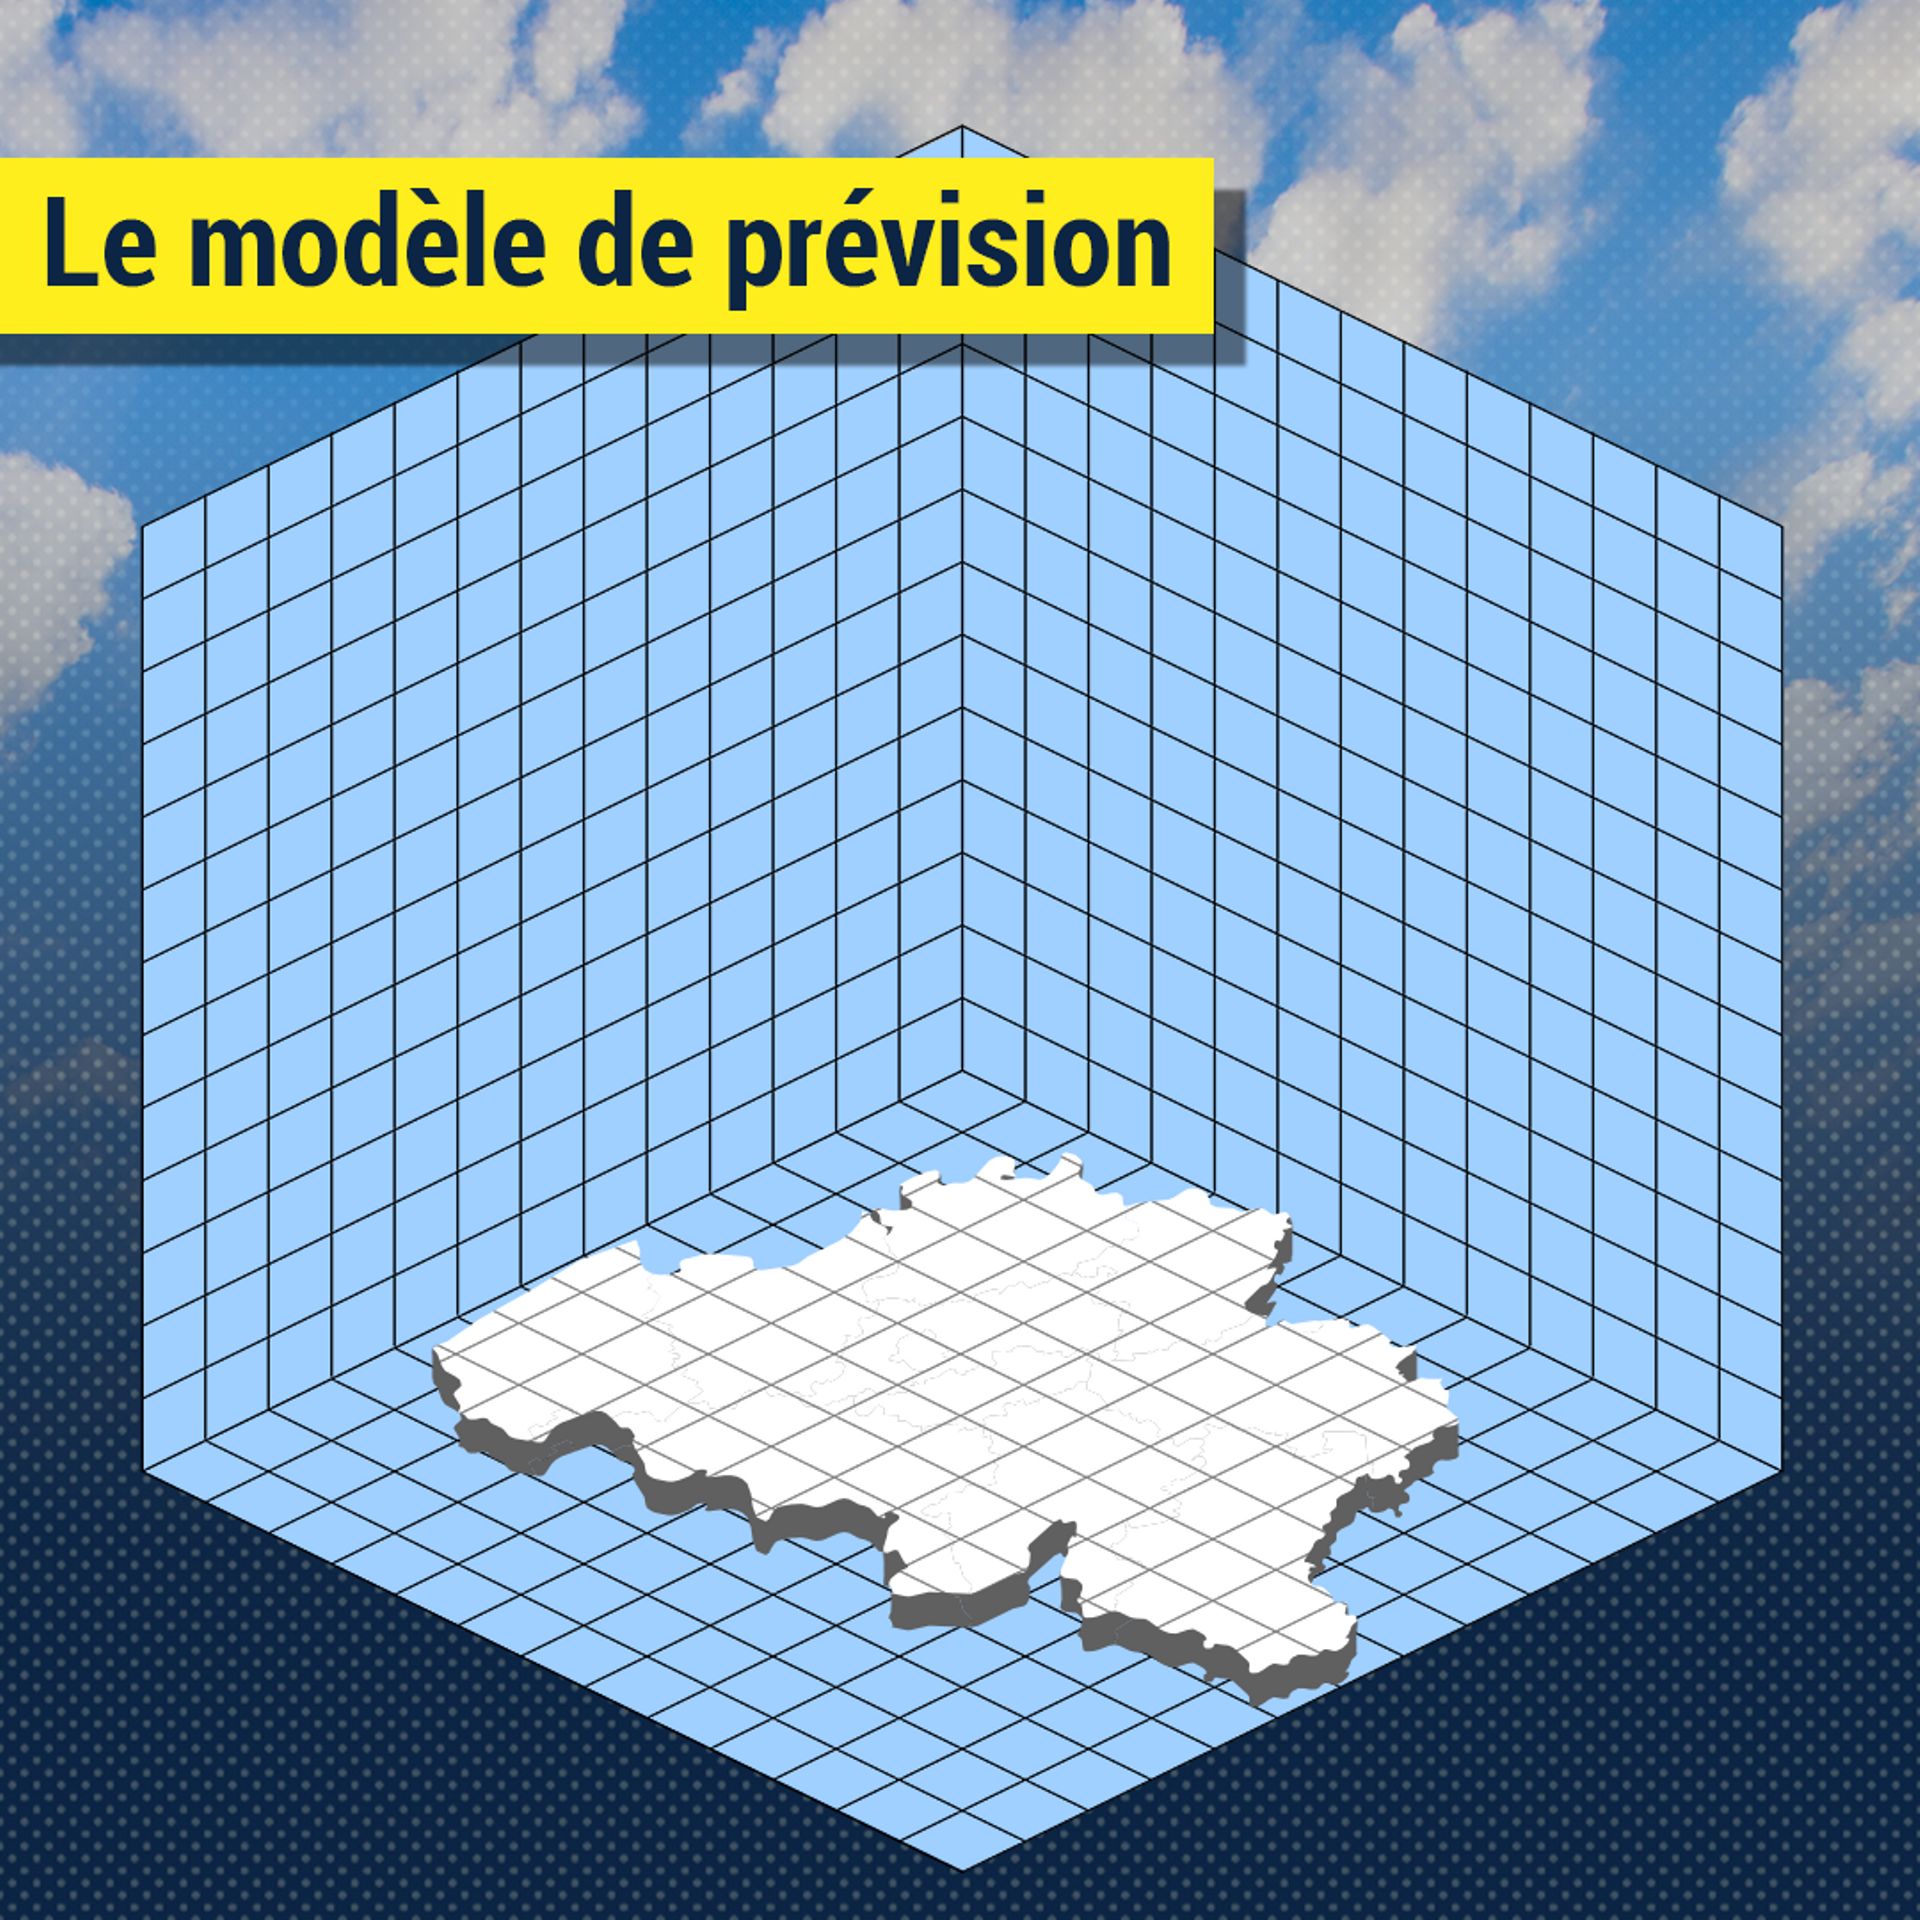 Représentation des mailles d'un modèle de prévision météo